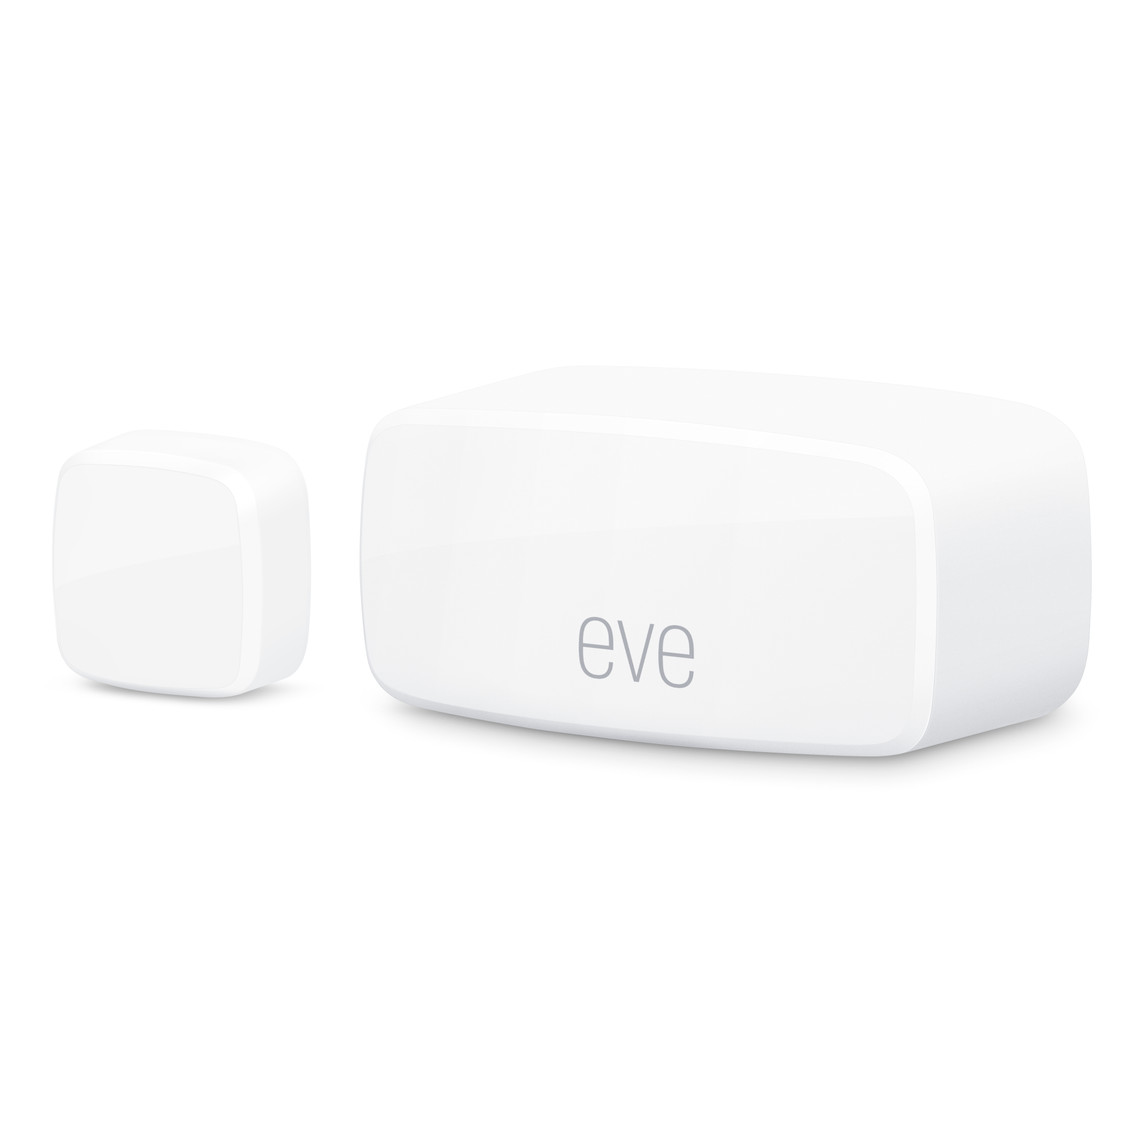 De compacte Eve draadloze contactsensoren met Matter, voor ramen en deuren. Het Eve-logo is er duidelijk op te zien.